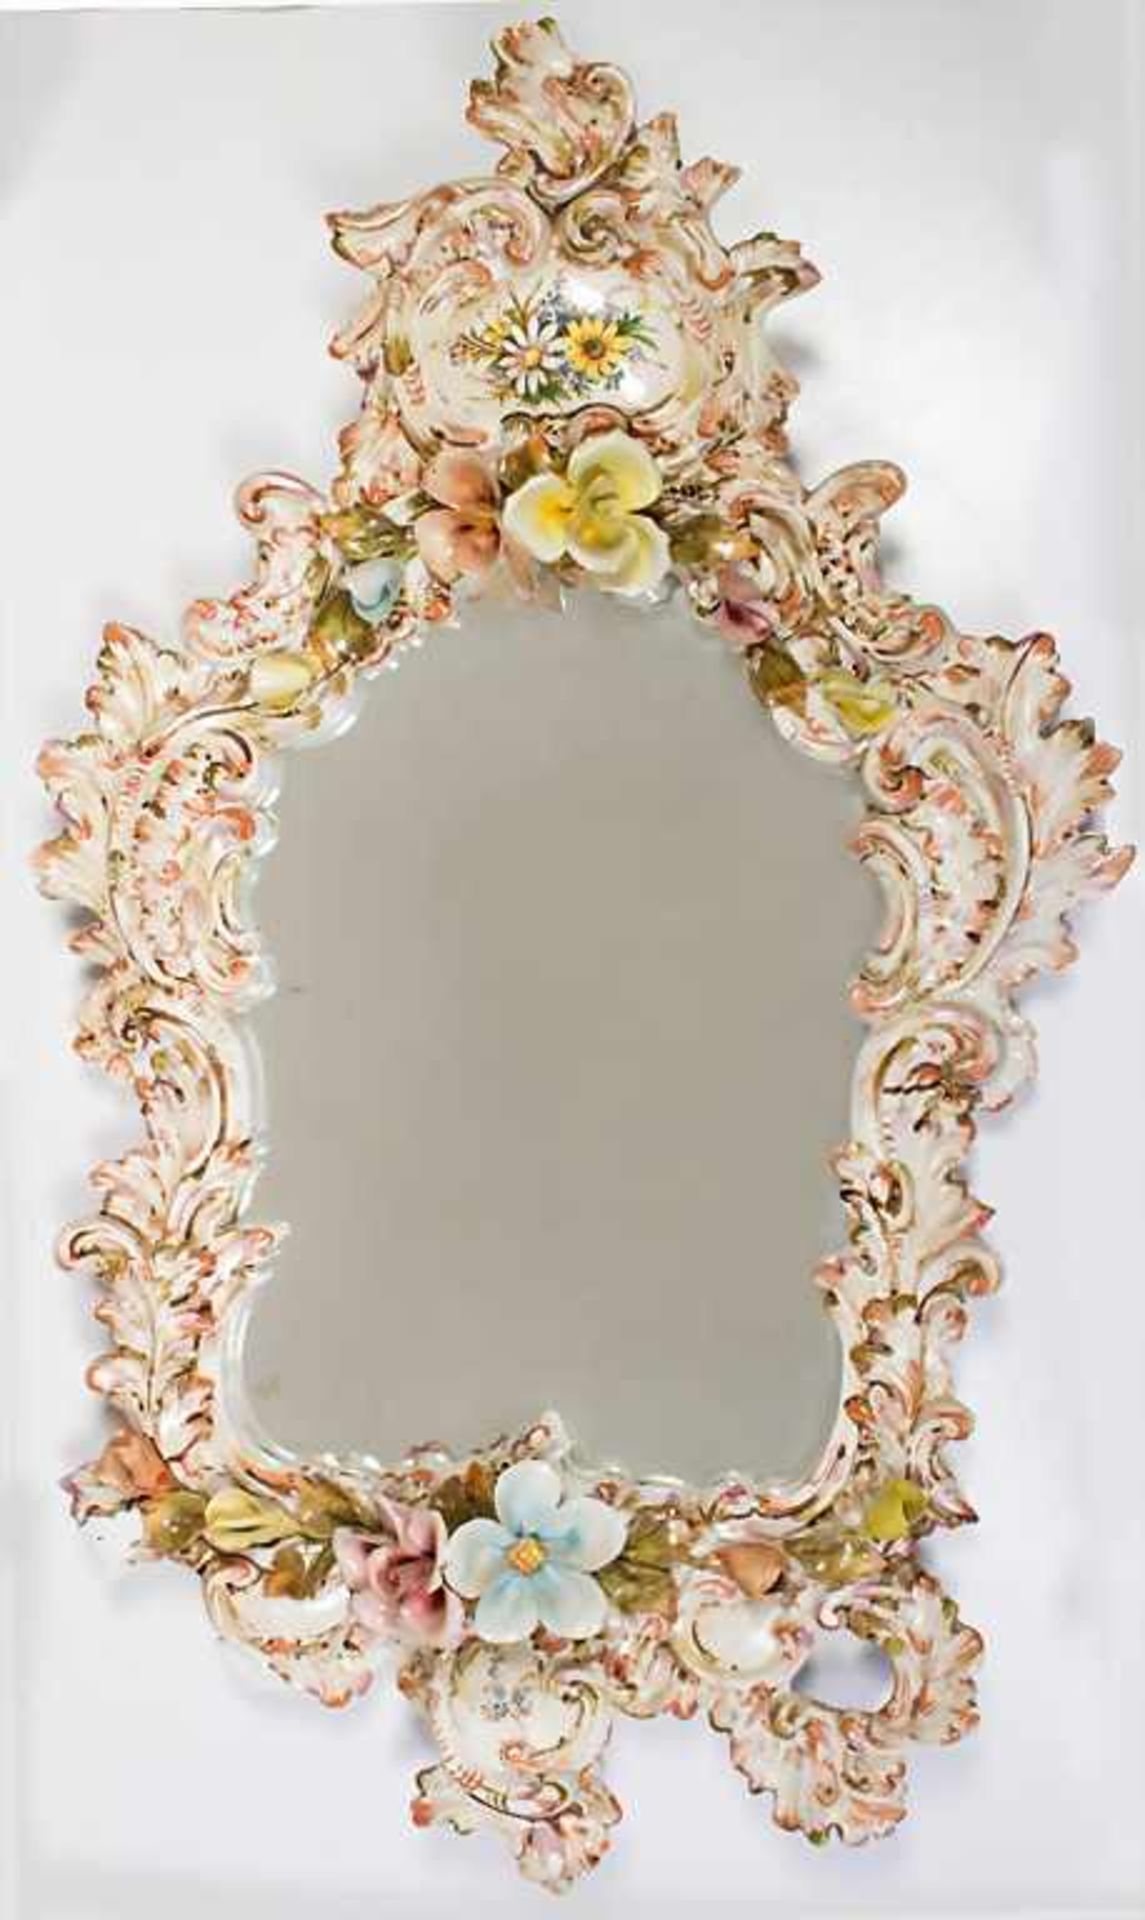 Spiegel mit Porzellanblüten / A mirror with porcelain flowersMaterial: Porzellan, farbig